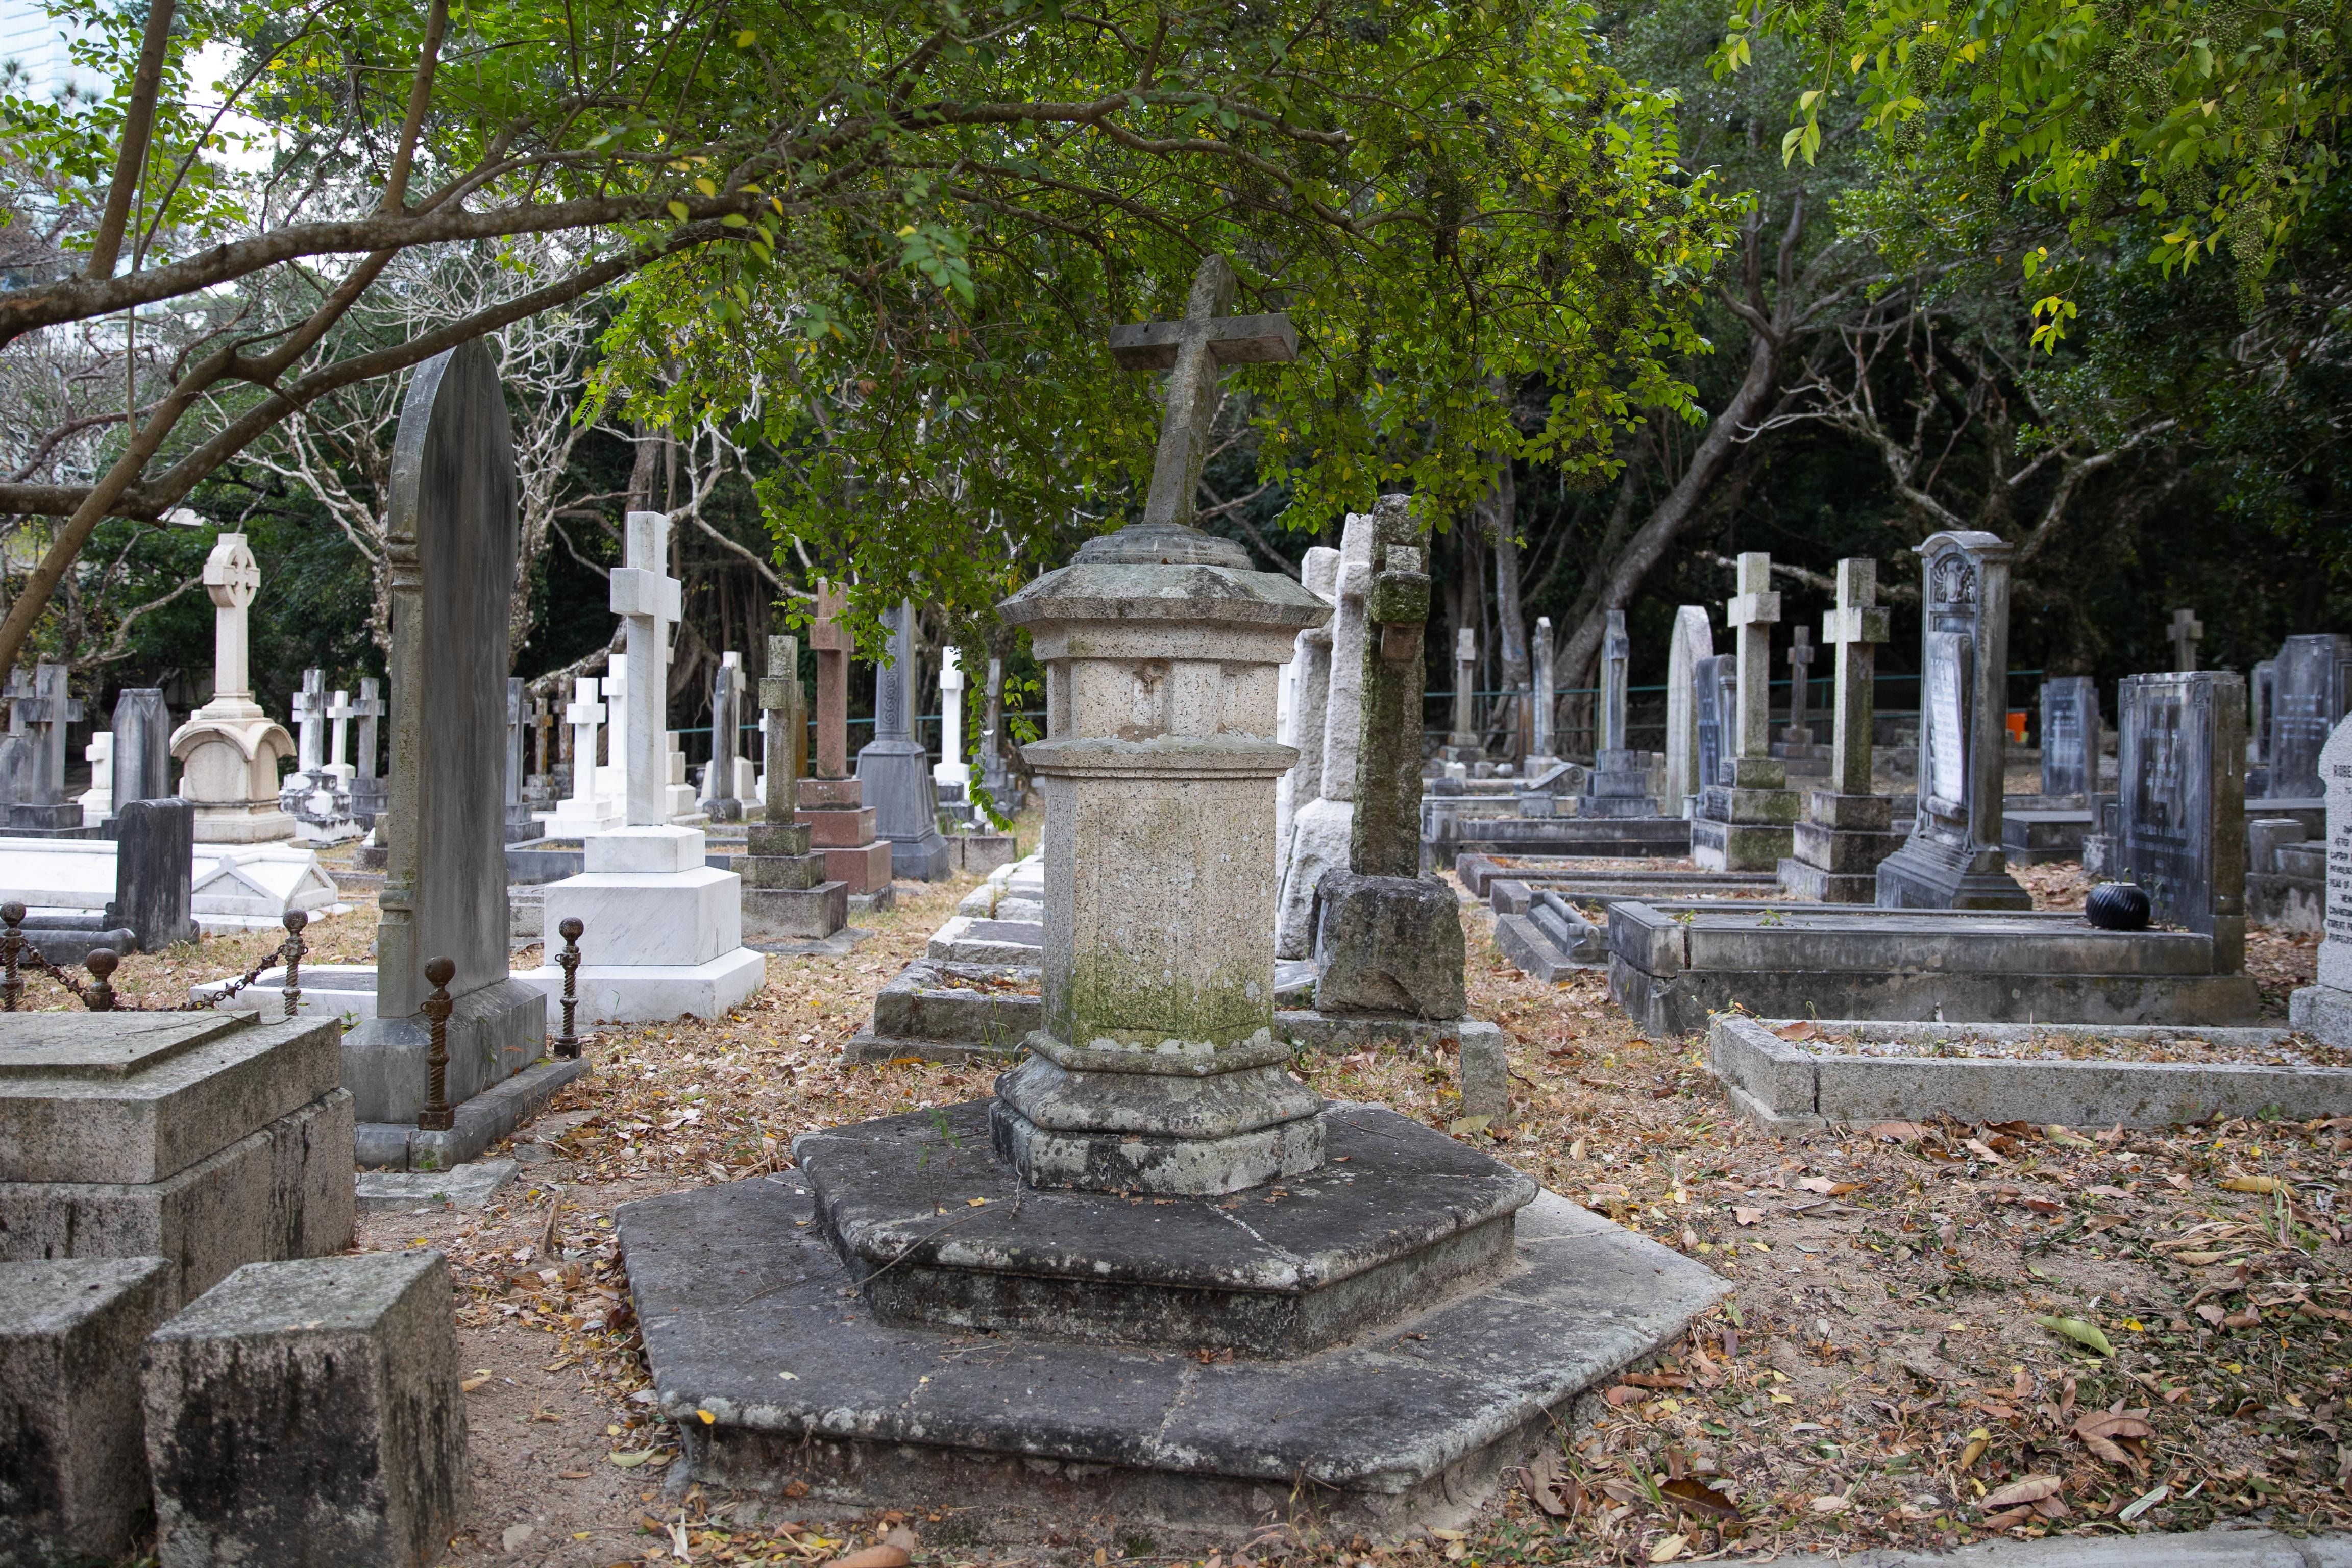 香港墳場屬本港早期香港墓園，由當年英國政府引入歐洲十九世紀的花園墓園概念來港建立，當時由英國聖公會管理，初期沒有定名，由於較多外國人落葬，當年又稱為「紅毛墳場」。(資料圖片)